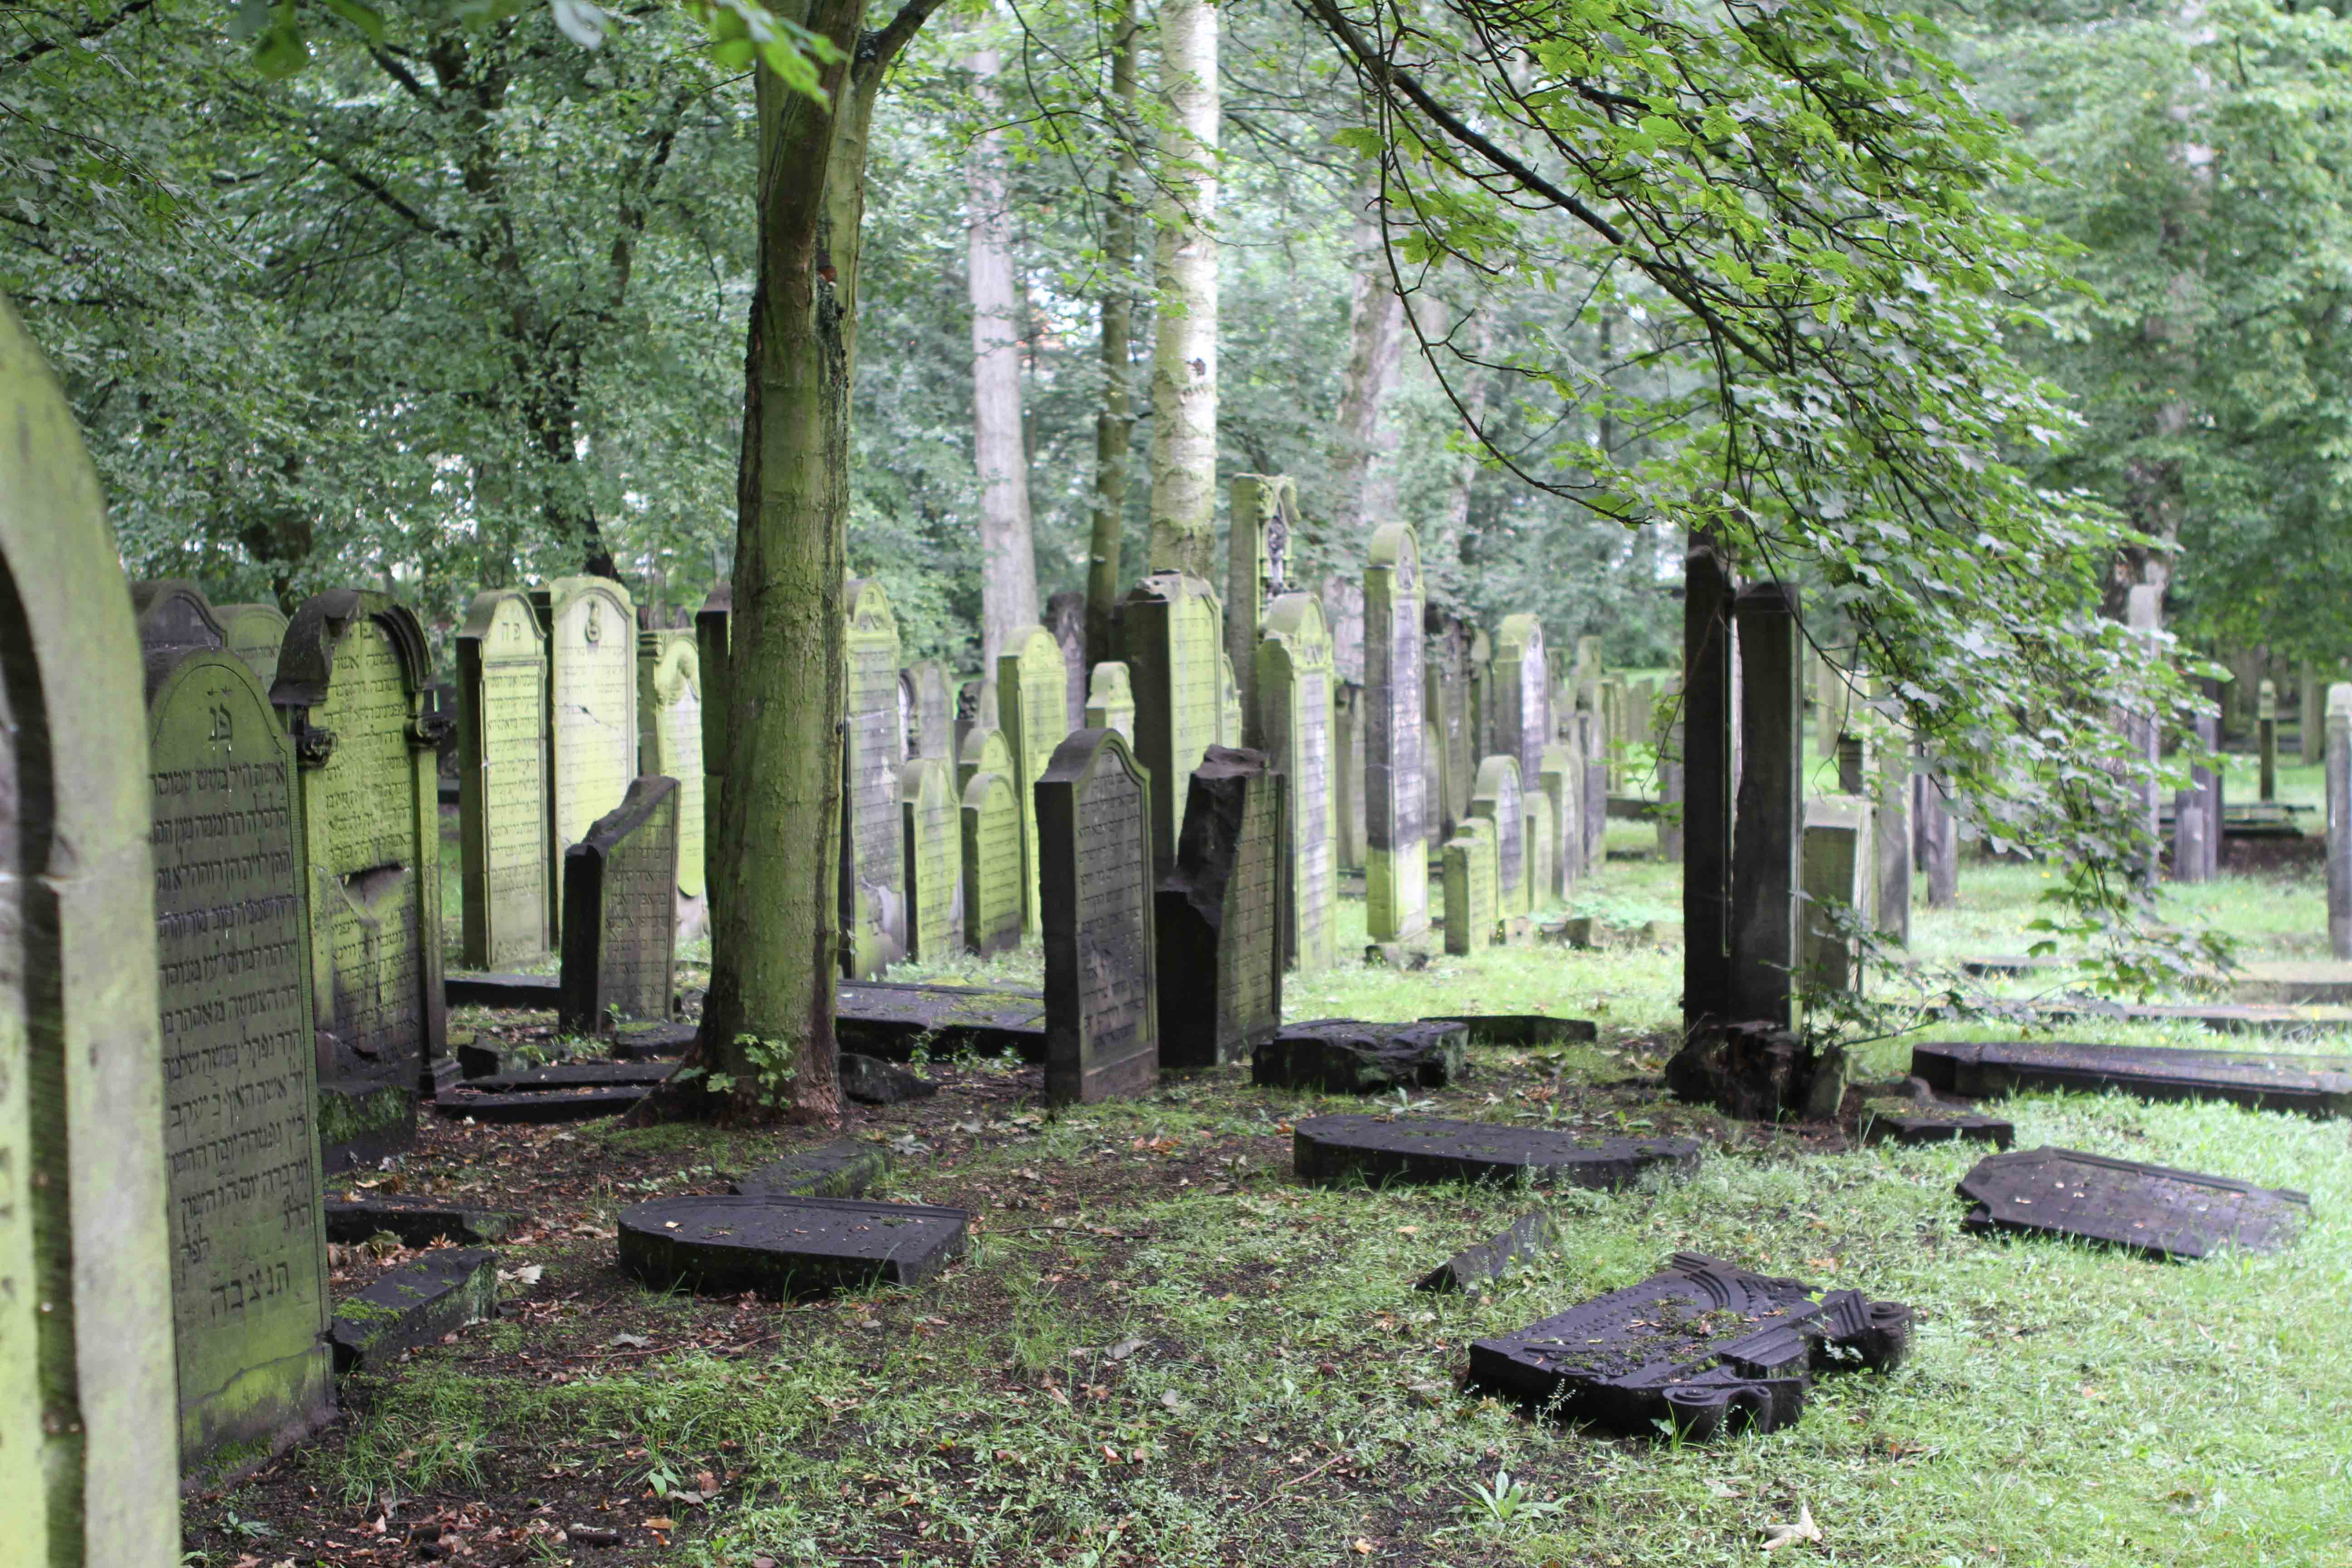 Impression vom jüdischen Friedhof Altona. Toll, dass dieser Friedhof die dunkle Vergangenheit überdauern konnte.